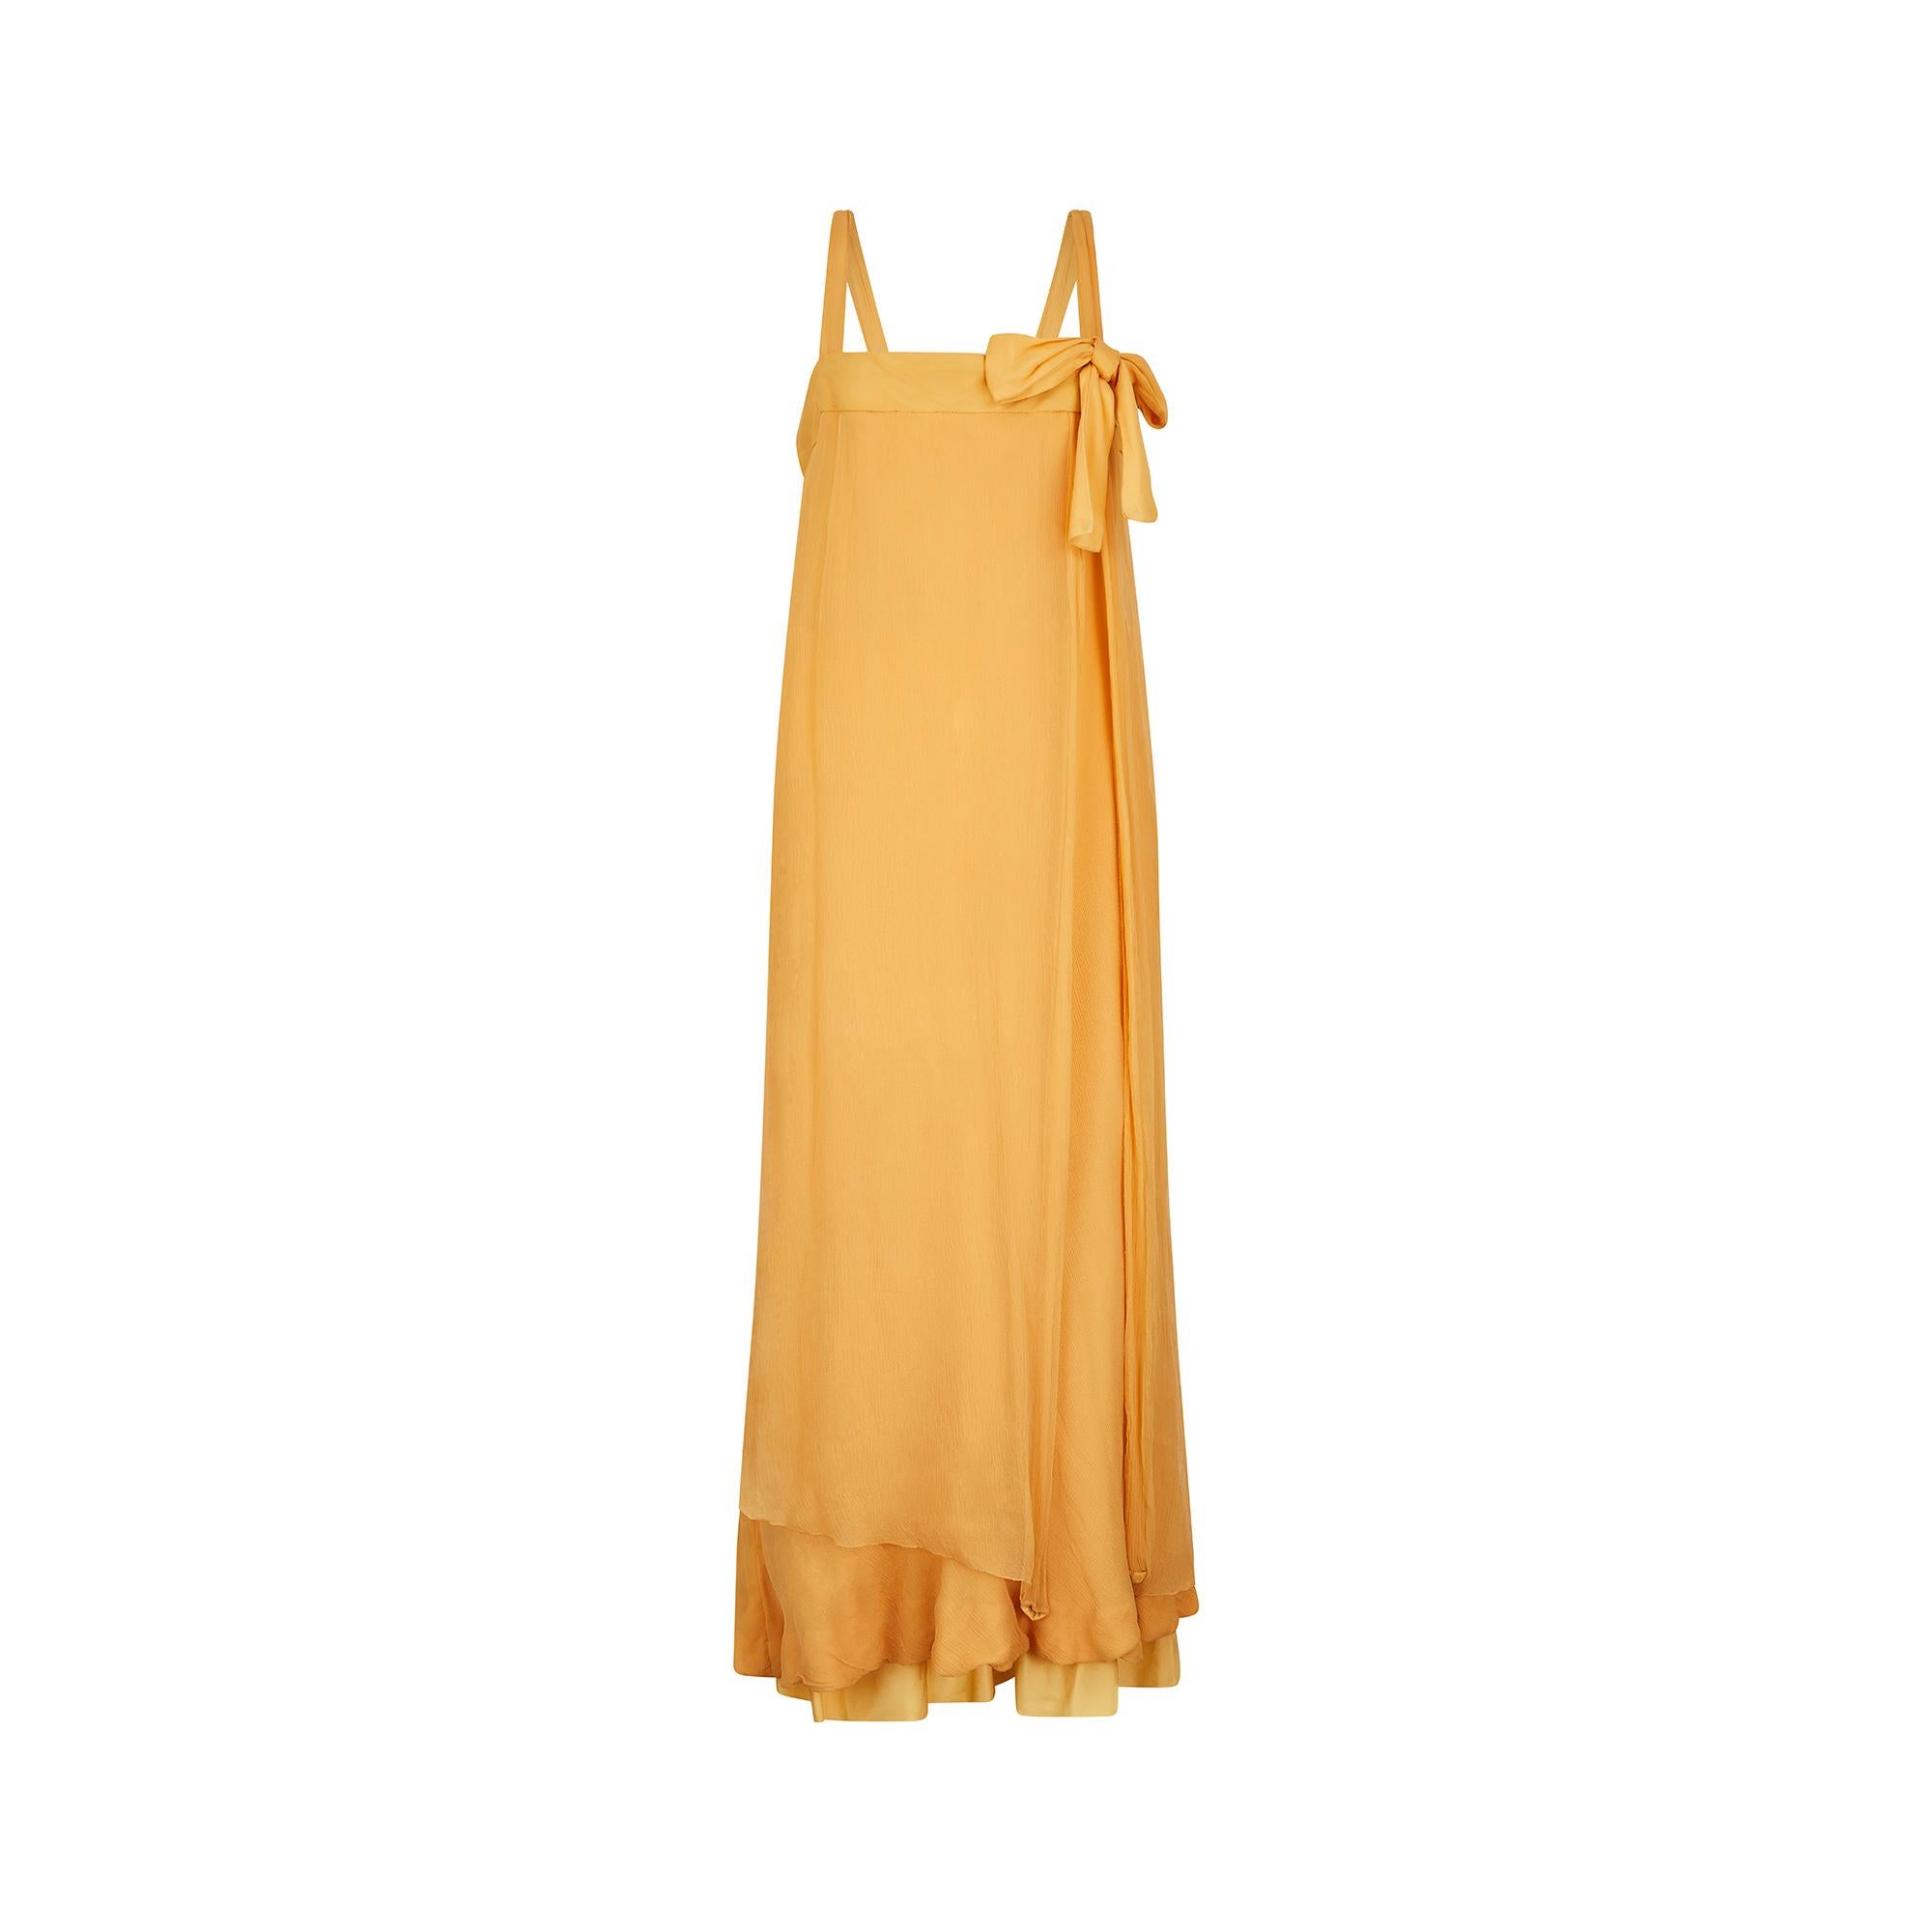 Hervorragendes Haute Couture Chiffon-Säulenkleid von Jacques Heim aus den Jahren 1958 -1963.  Ein zeitloser, fließender Stil und der perfekte Farbton von Sonnengelb. Das Kleid ist vorne und hinten mit einer Schleife verziert und hängt locker herab -